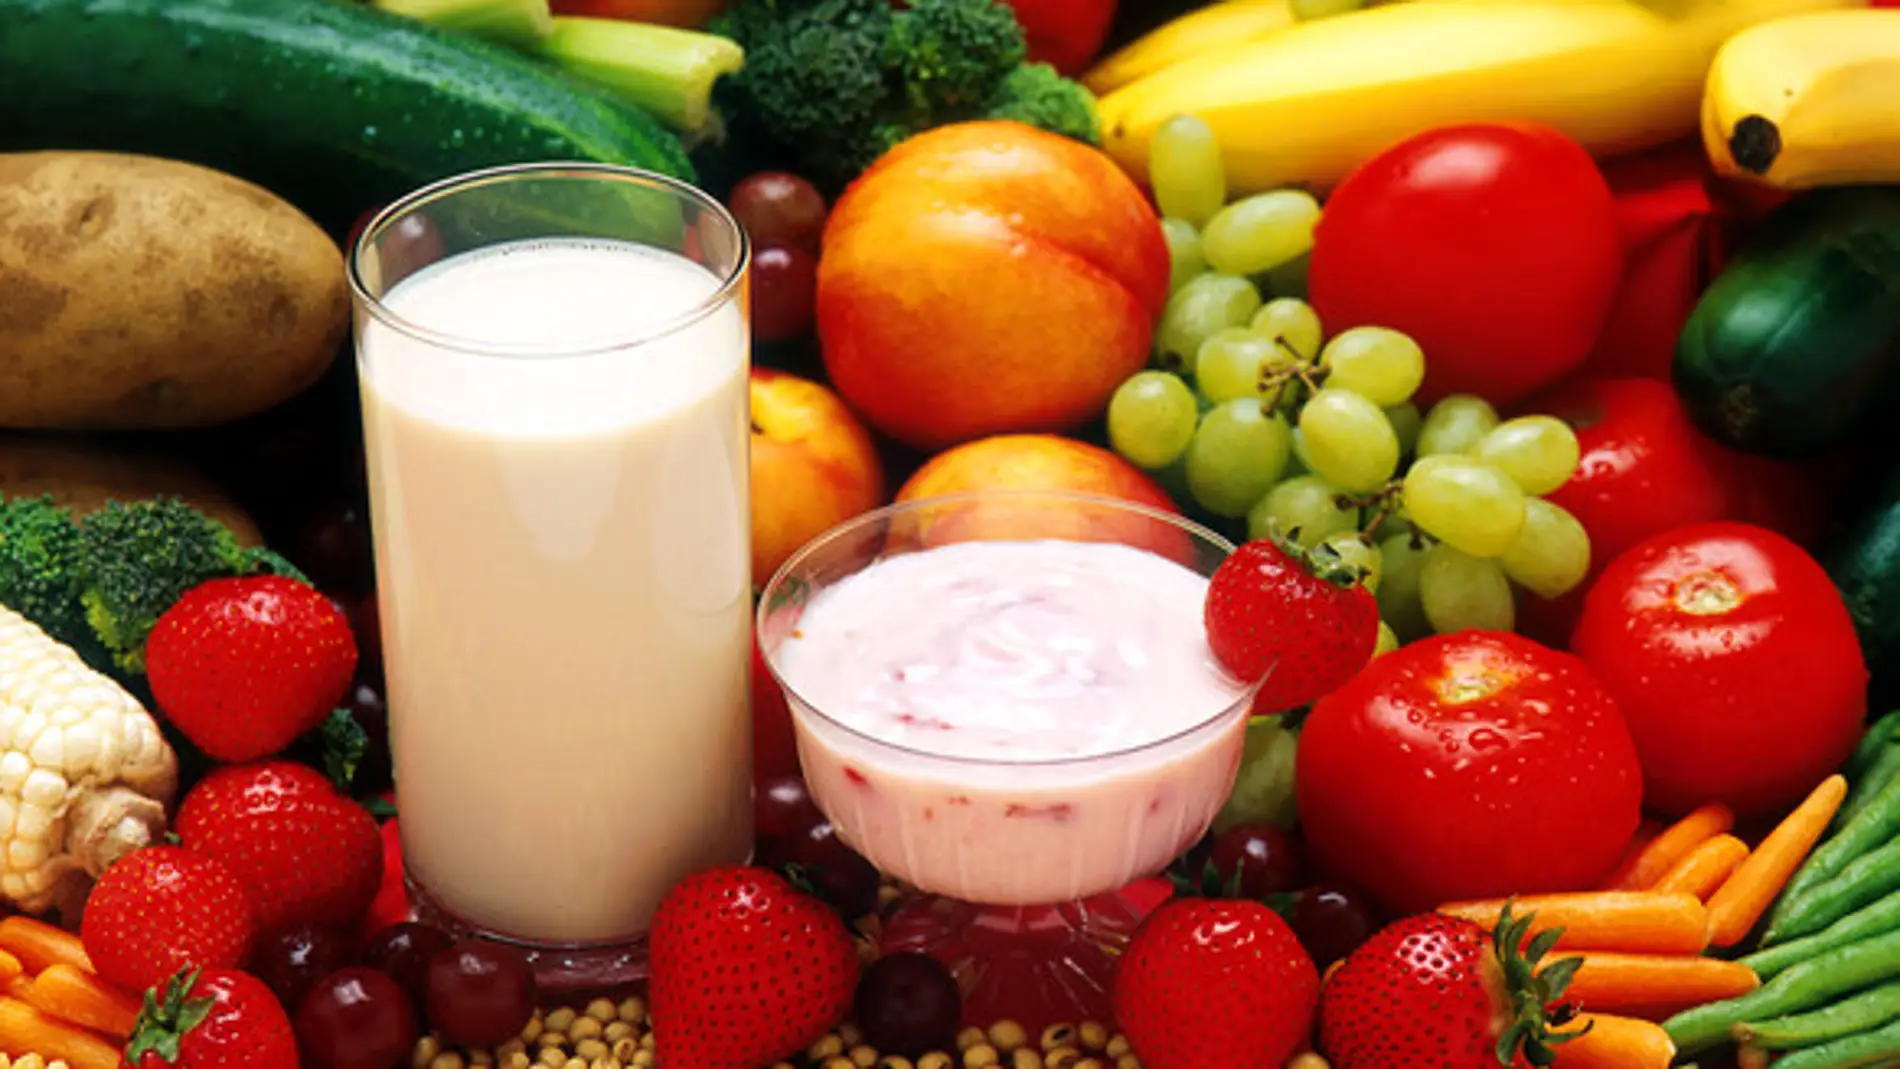 La gran mayoría de dietas detox abarcan desde periodos de ayuno totales a regímenes basados en caldos, batidos de frutas y verduras, incluyendo algunas de ellas el uso de laxantes, diuréticos y suplementos fitoterápicos